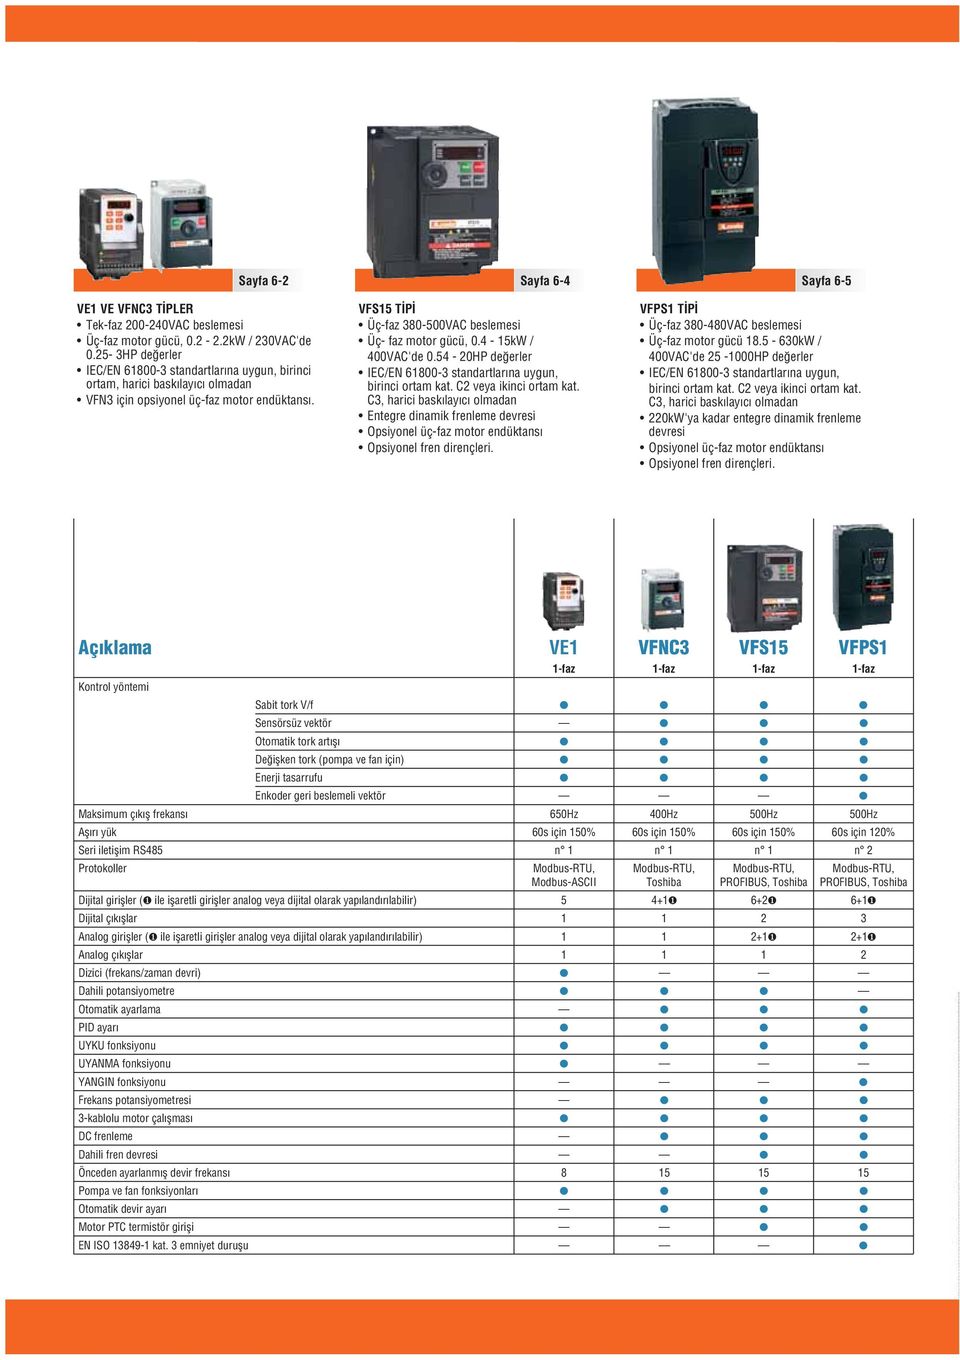 4-15kW / 400V'de 0.54-20HP değerler I/N 1800-3 standartlarına uygun, birinci ortam kat. 2 veya ikinci ortam kat.